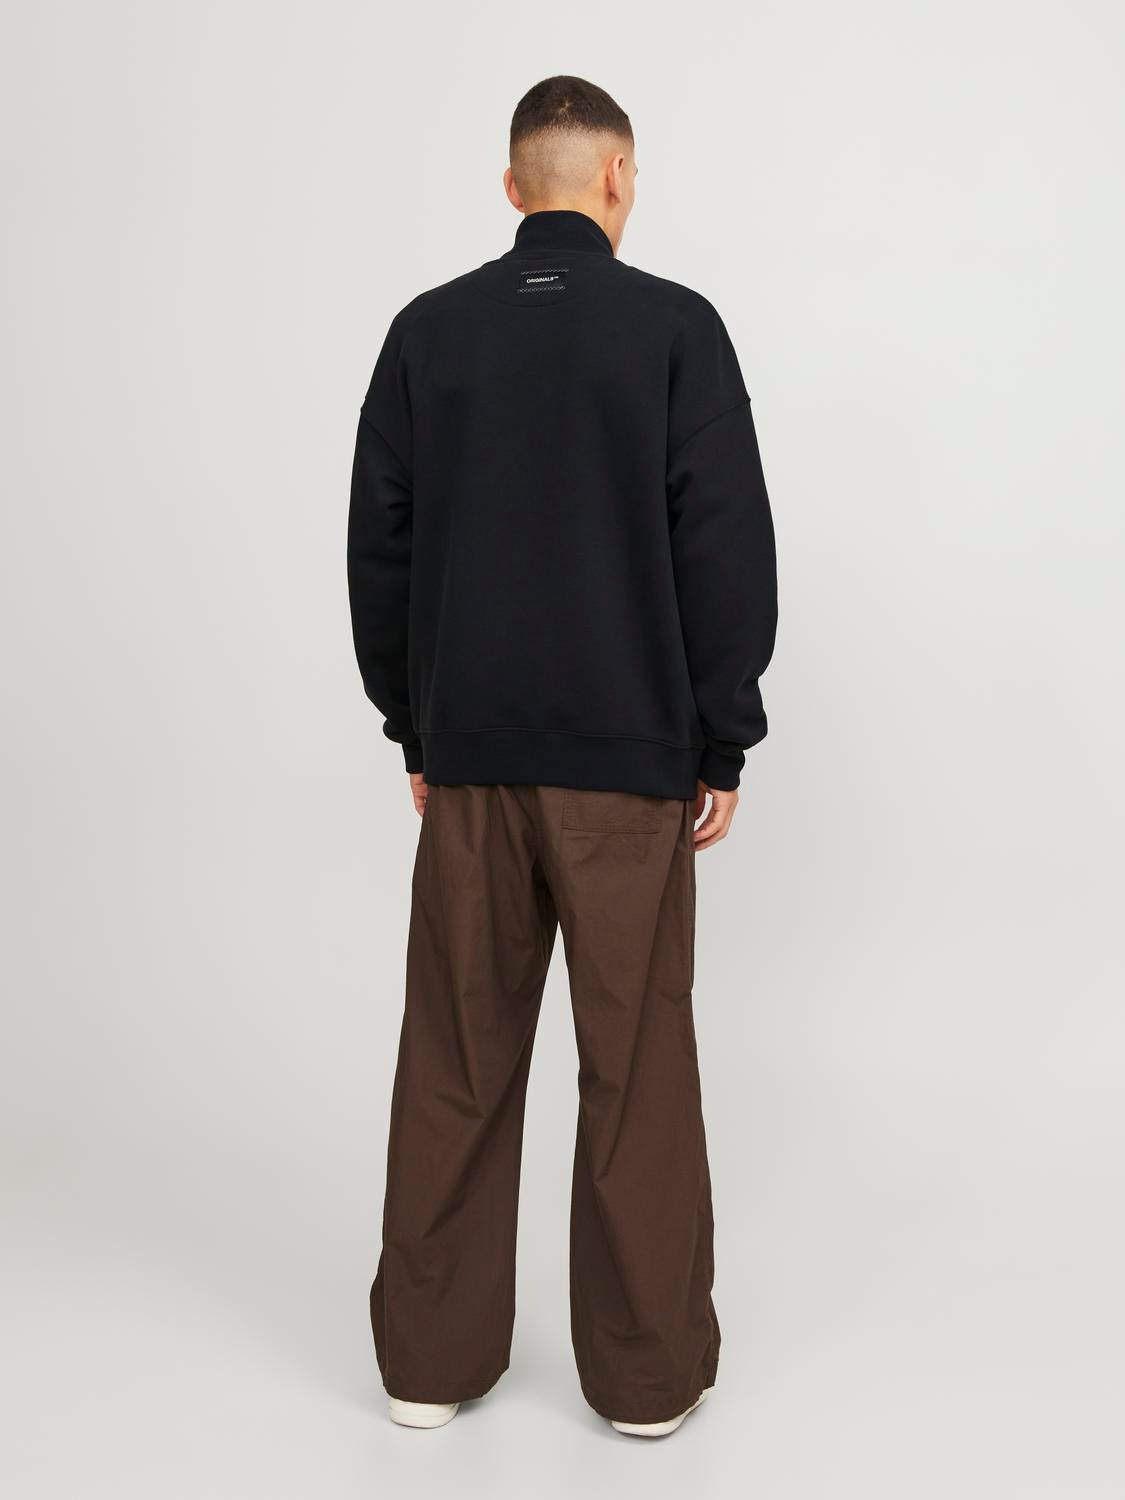 Jack & Jones Einfarbig Sweatshirt mit Reißverschluss -Black - 12252370